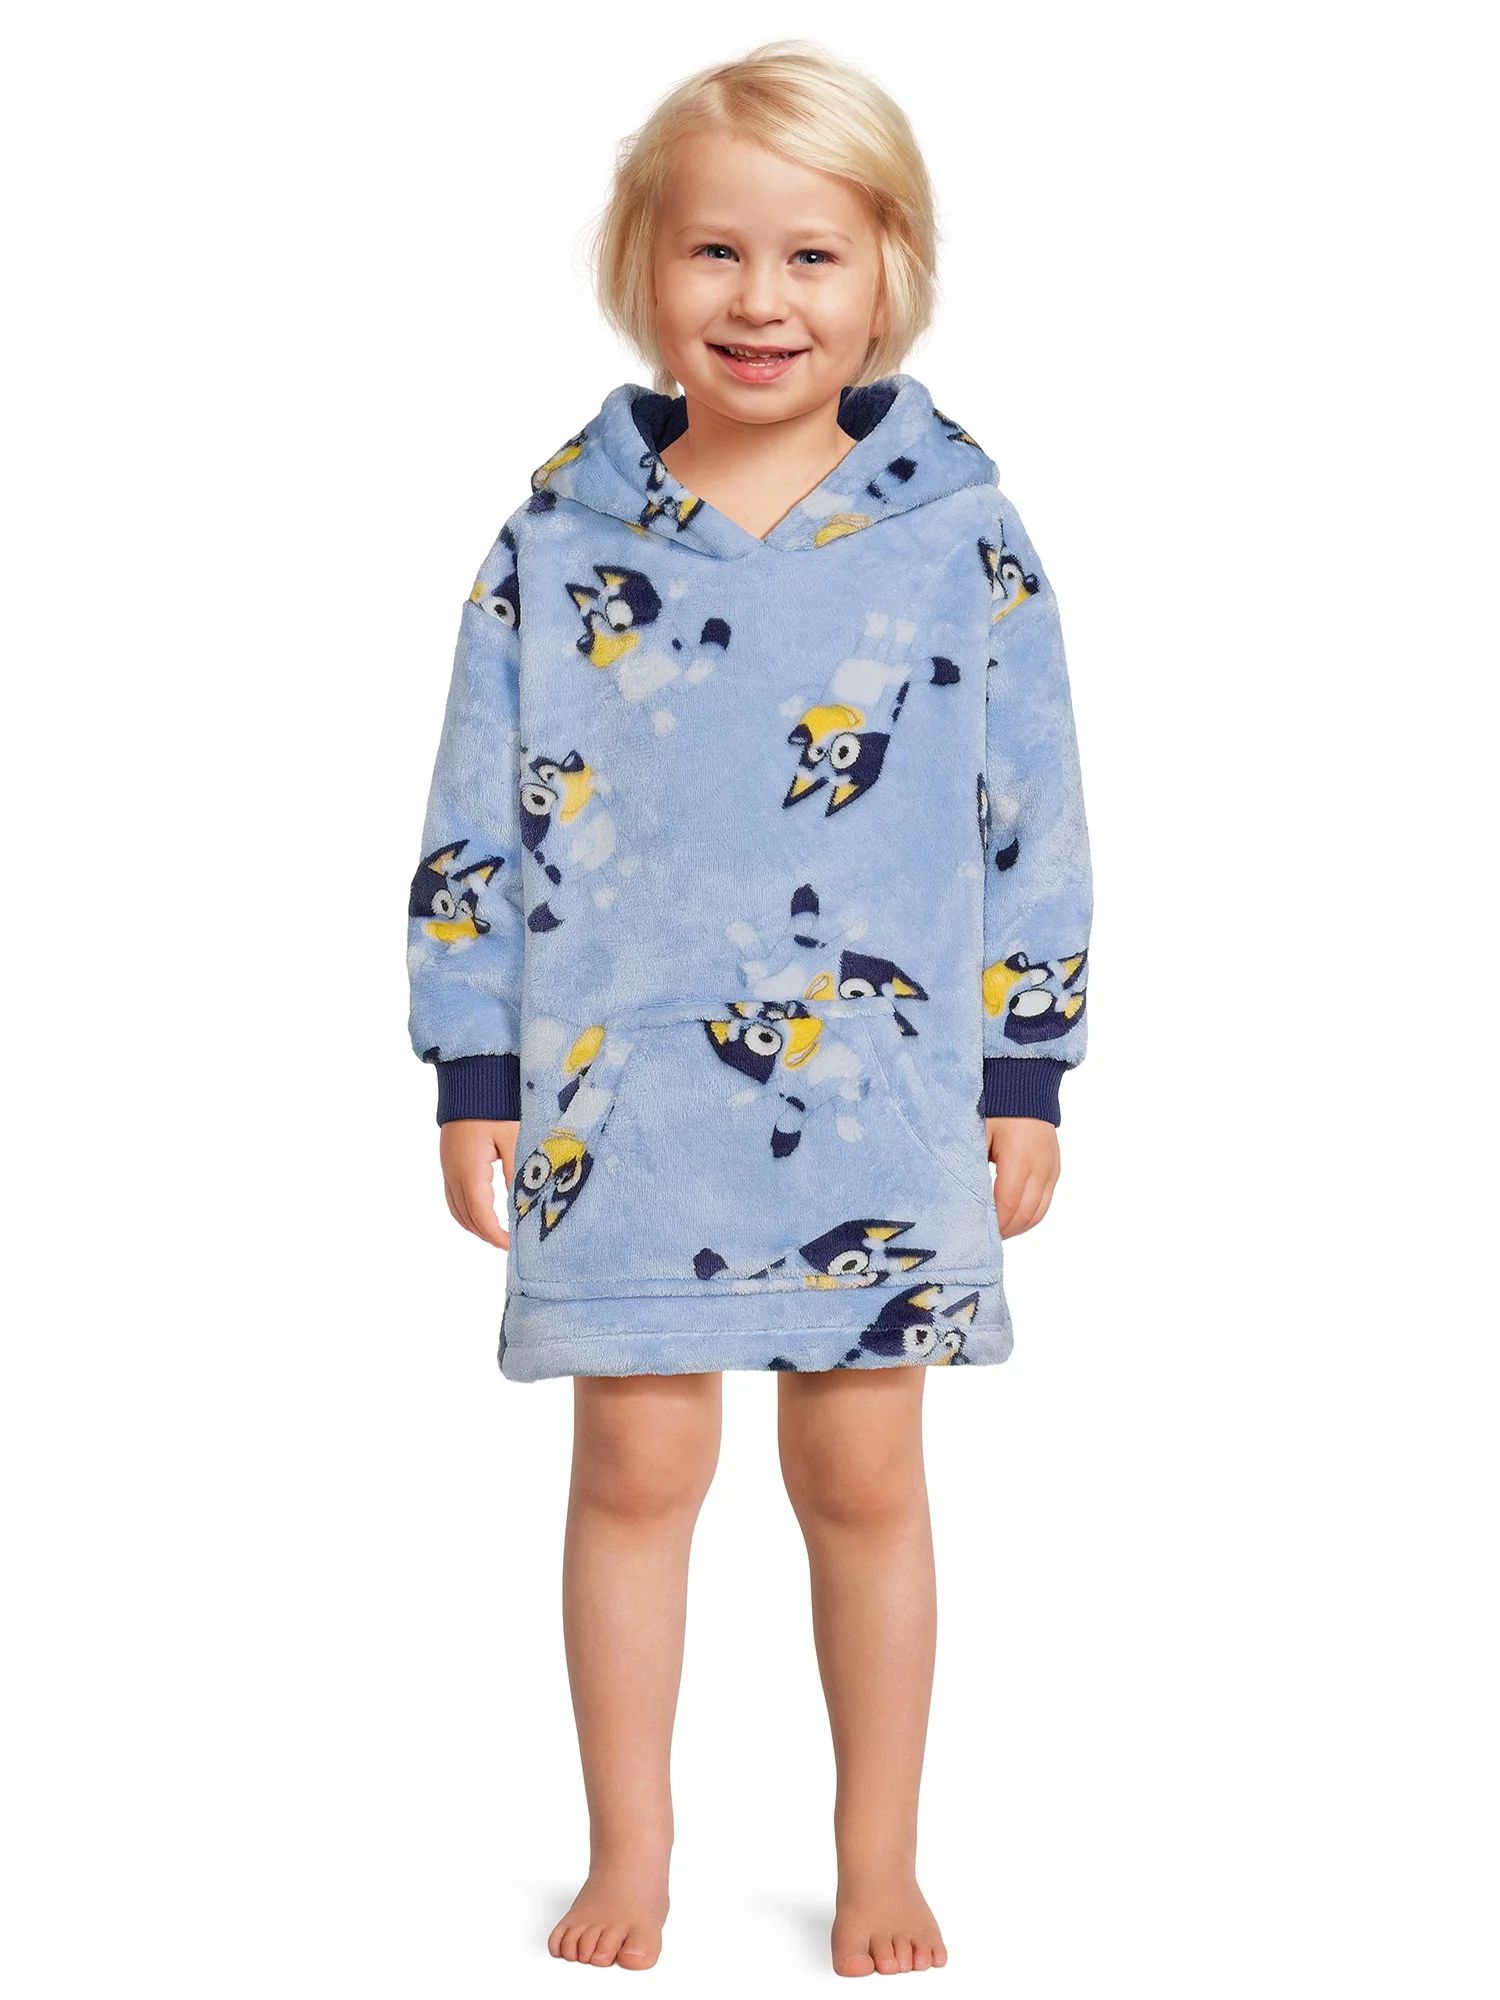 Bluey Toddler Girl Plush Pullover Hoodie, Sizes 12M-5T | Walmart (US)